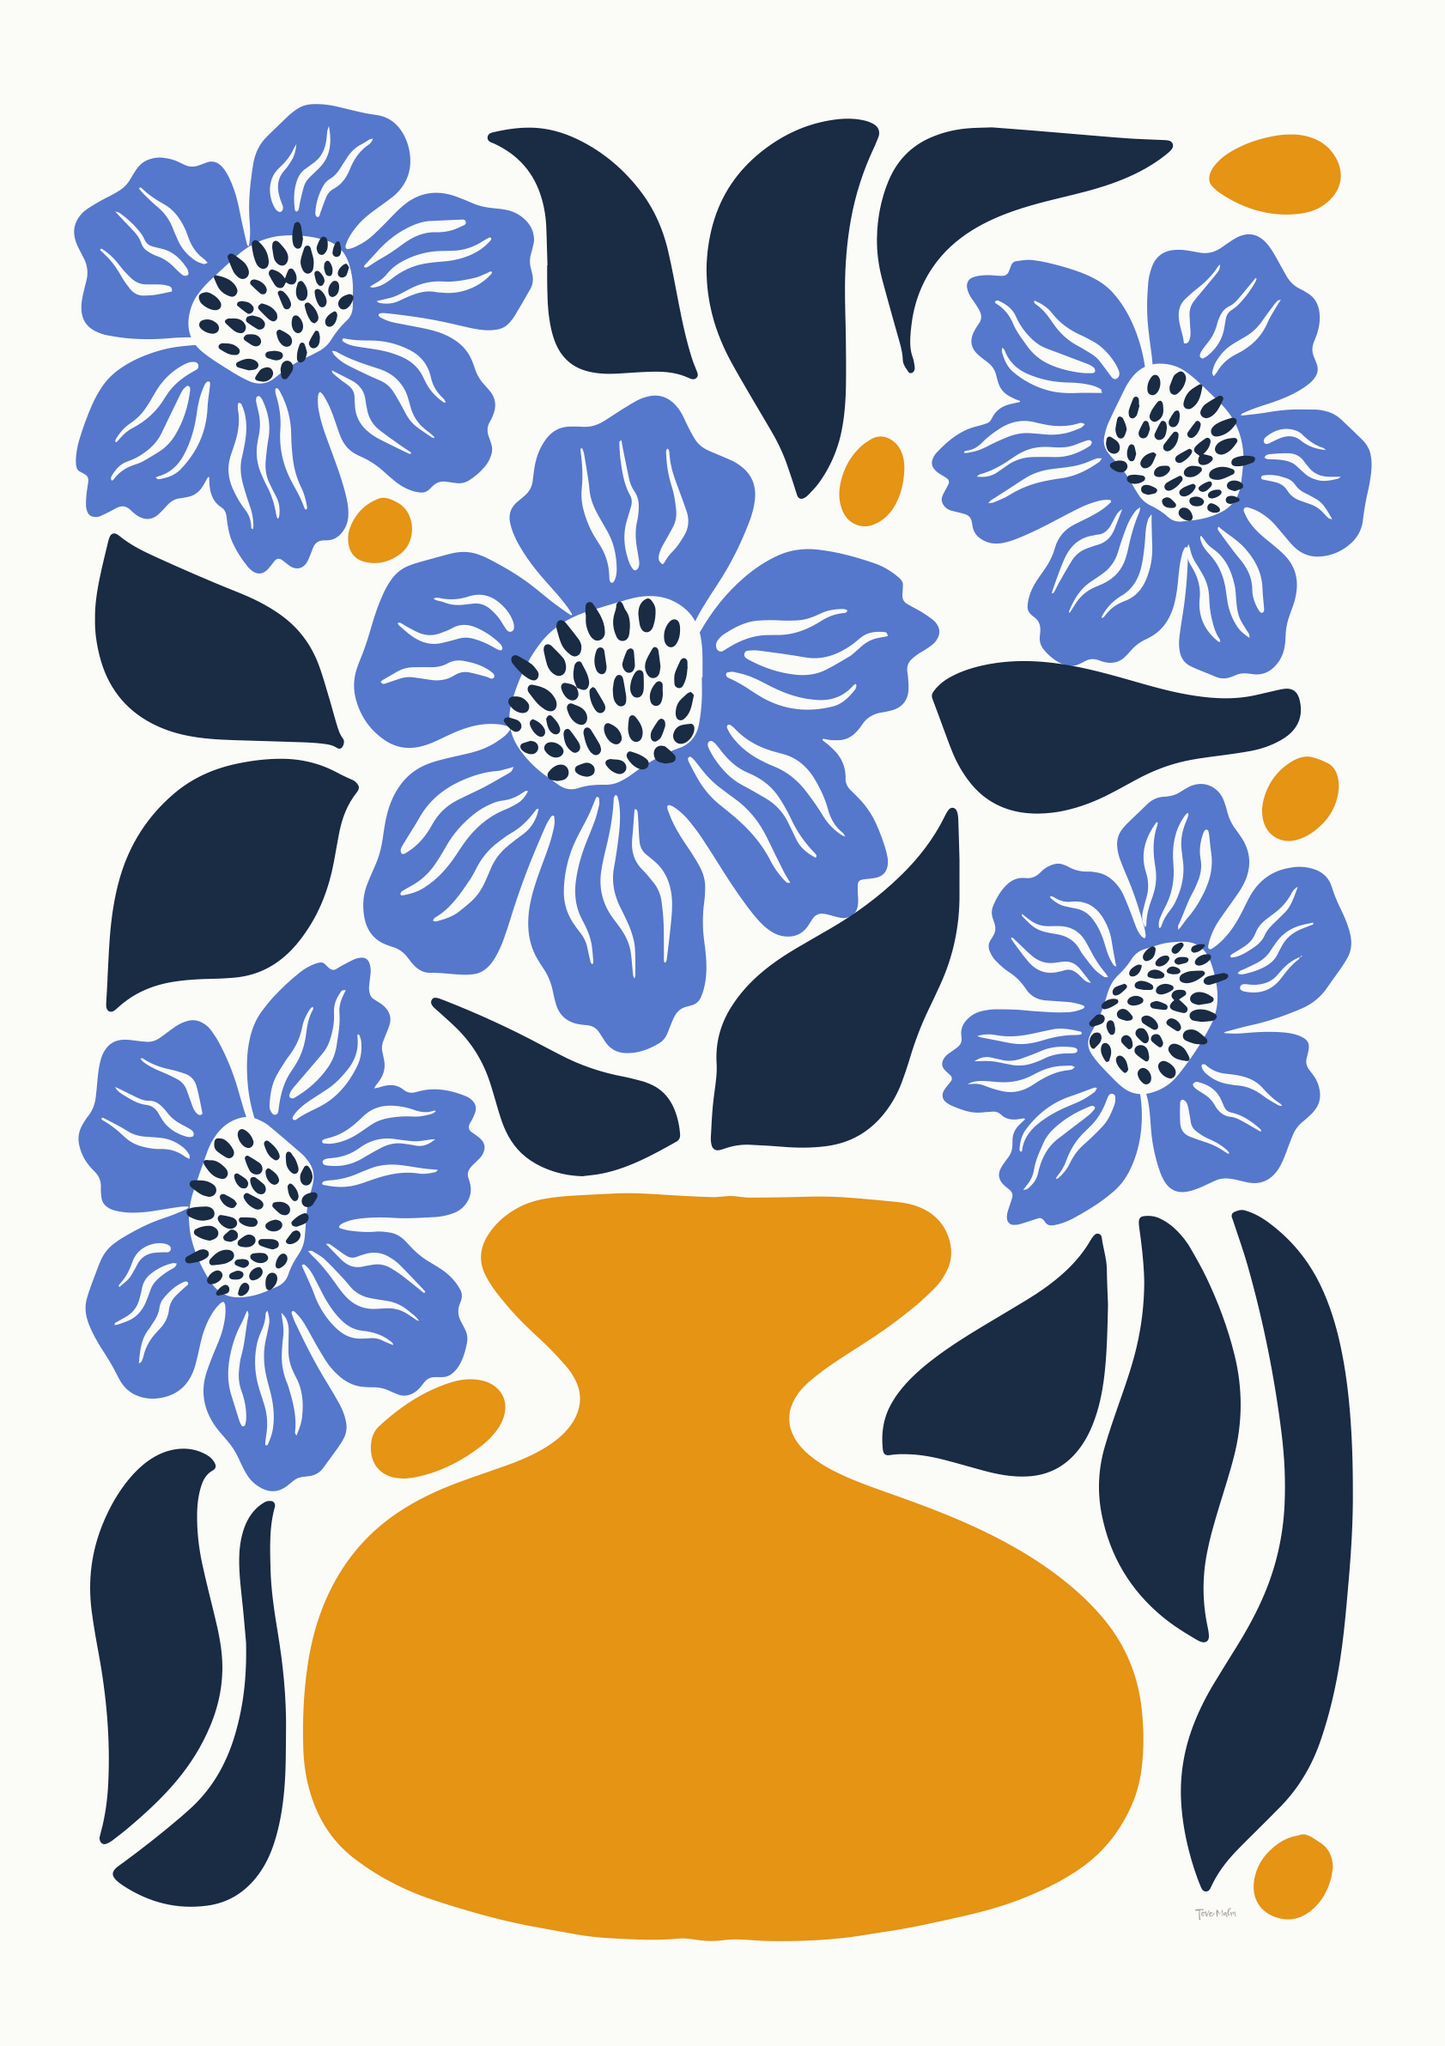 Blå Vallmo illustration i retro färger, design Tove Malm